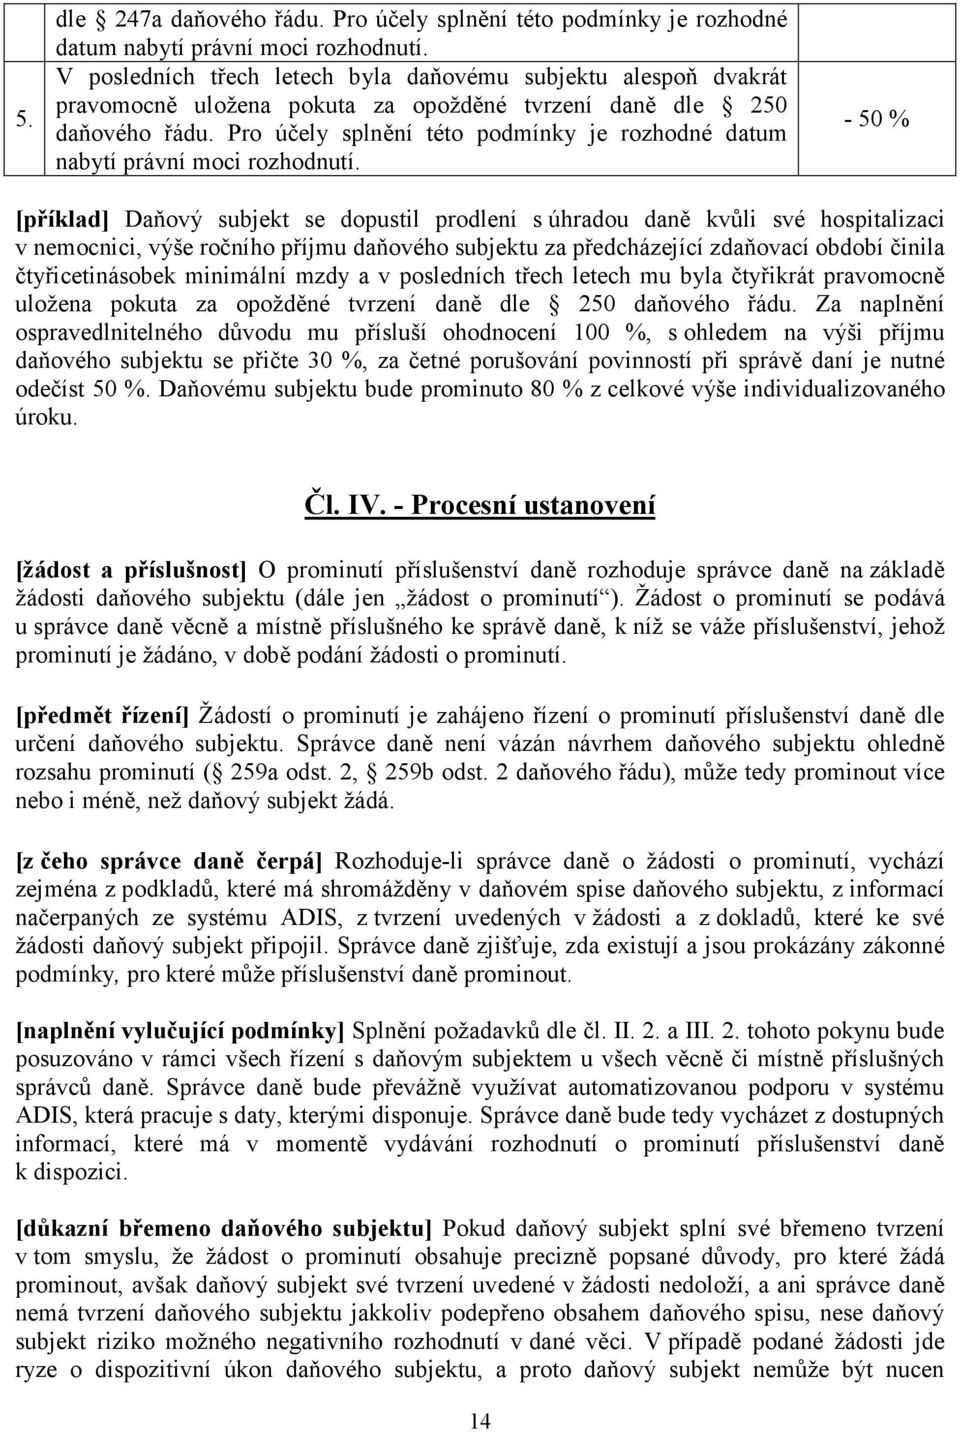 Pokyn GFŘ-D-21 k promíjení příslušenství daně. Čl. I. - Obecná ustanovení -  PDF Stažení zdarma